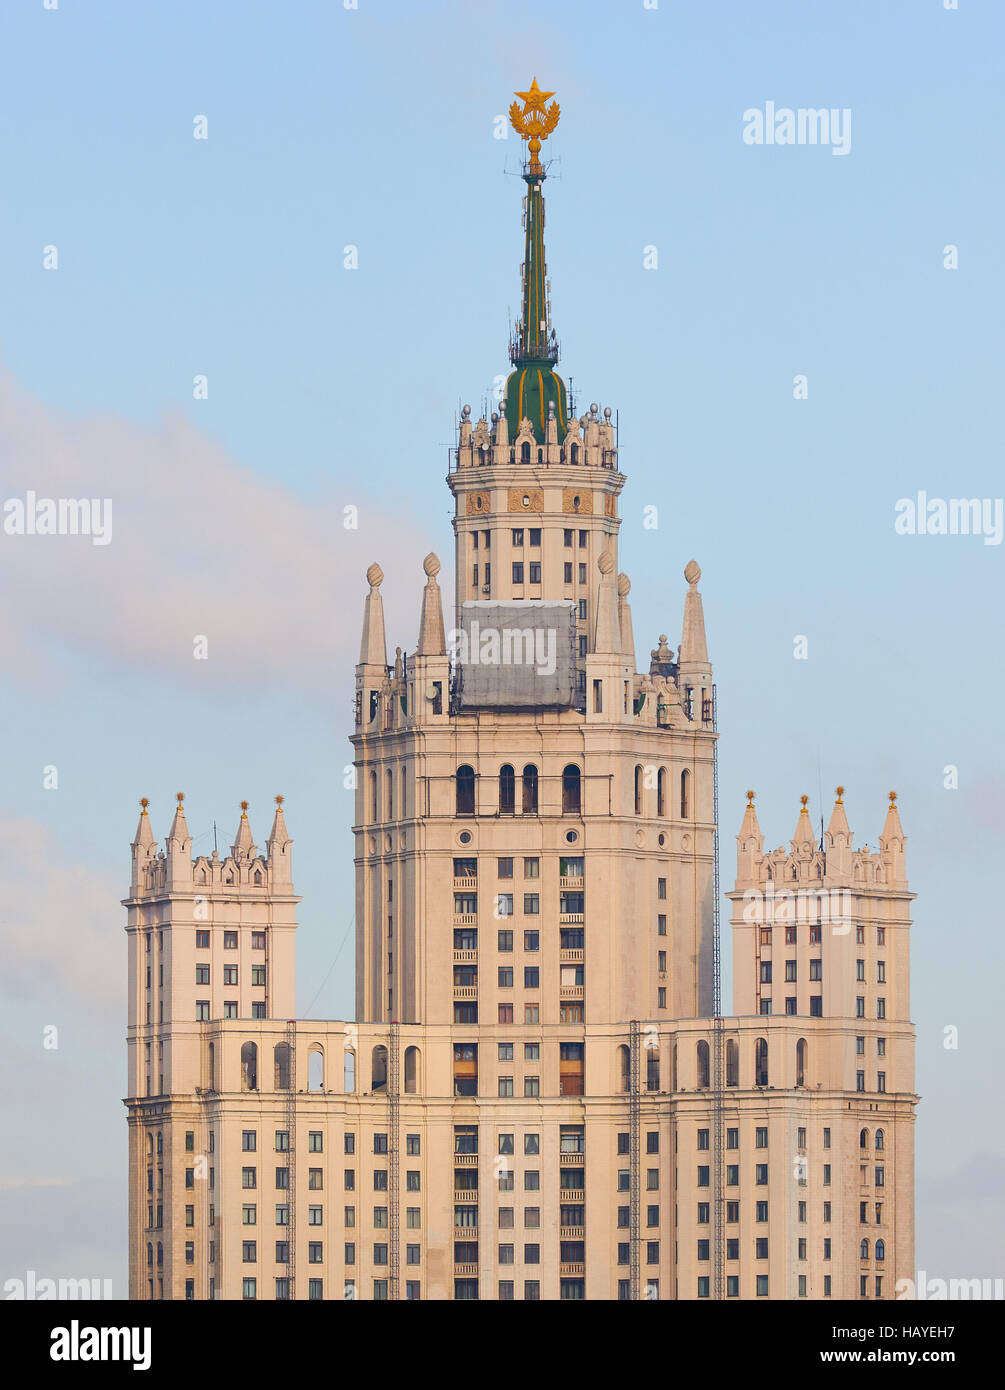 Ministère des affaires étrangères de la Russie la construction d'un gratte-ciel stalinien construit en 1953 Moscou Russie Banque D'Images